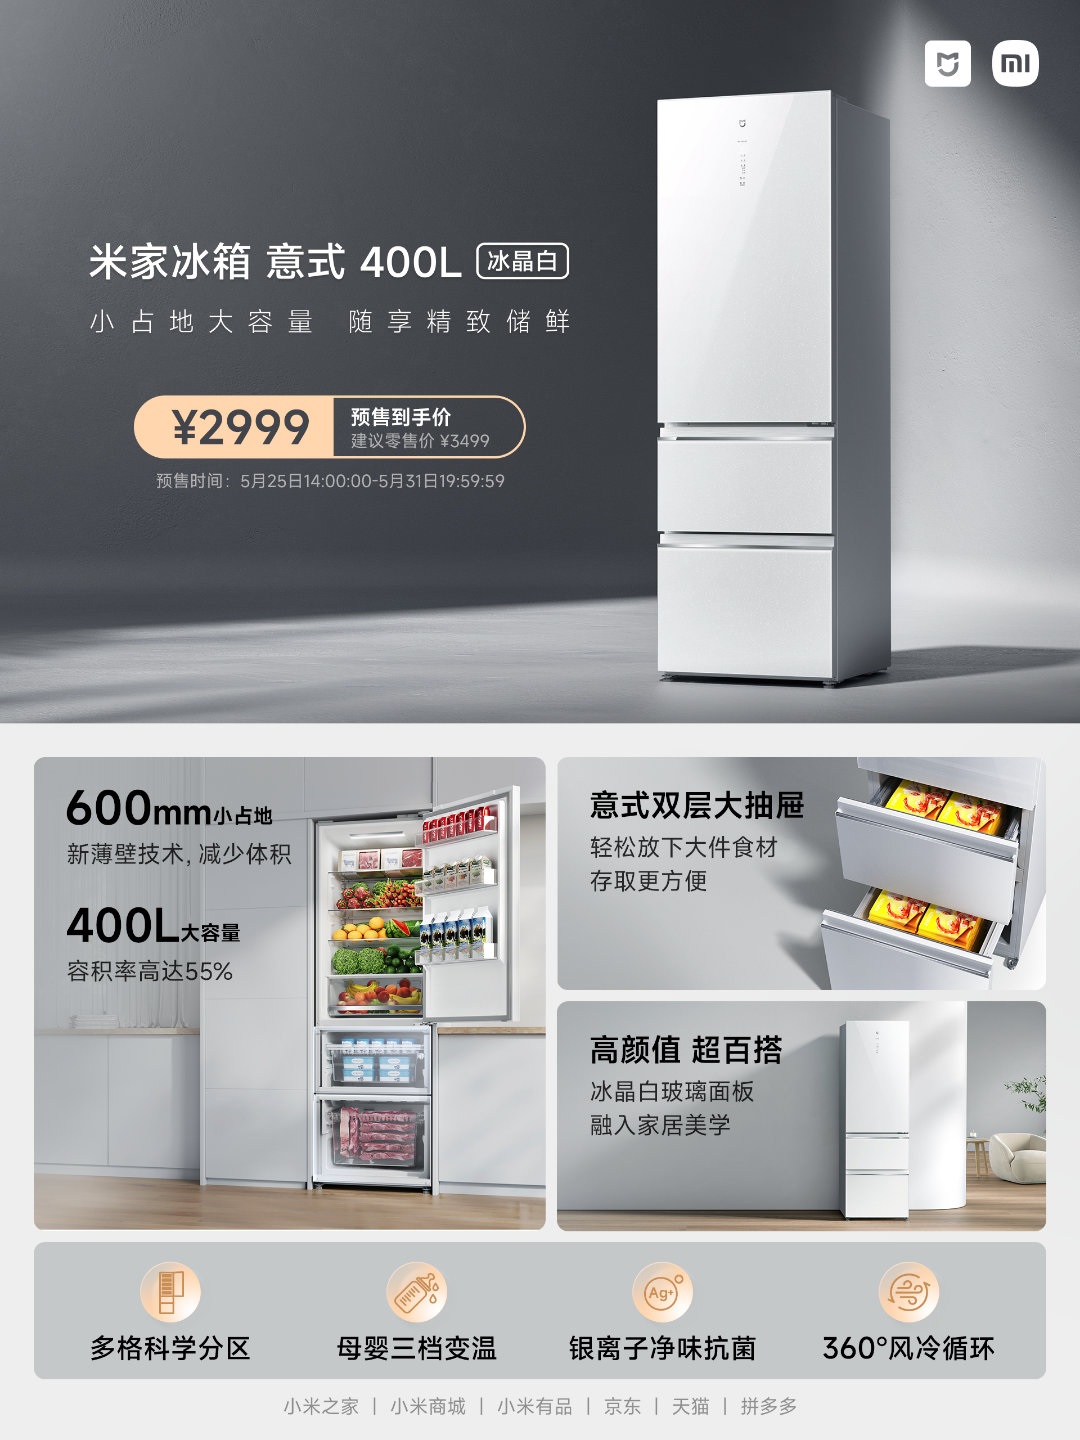 Xiaomi представила компактный 400 л холодильник в итальянском стиле